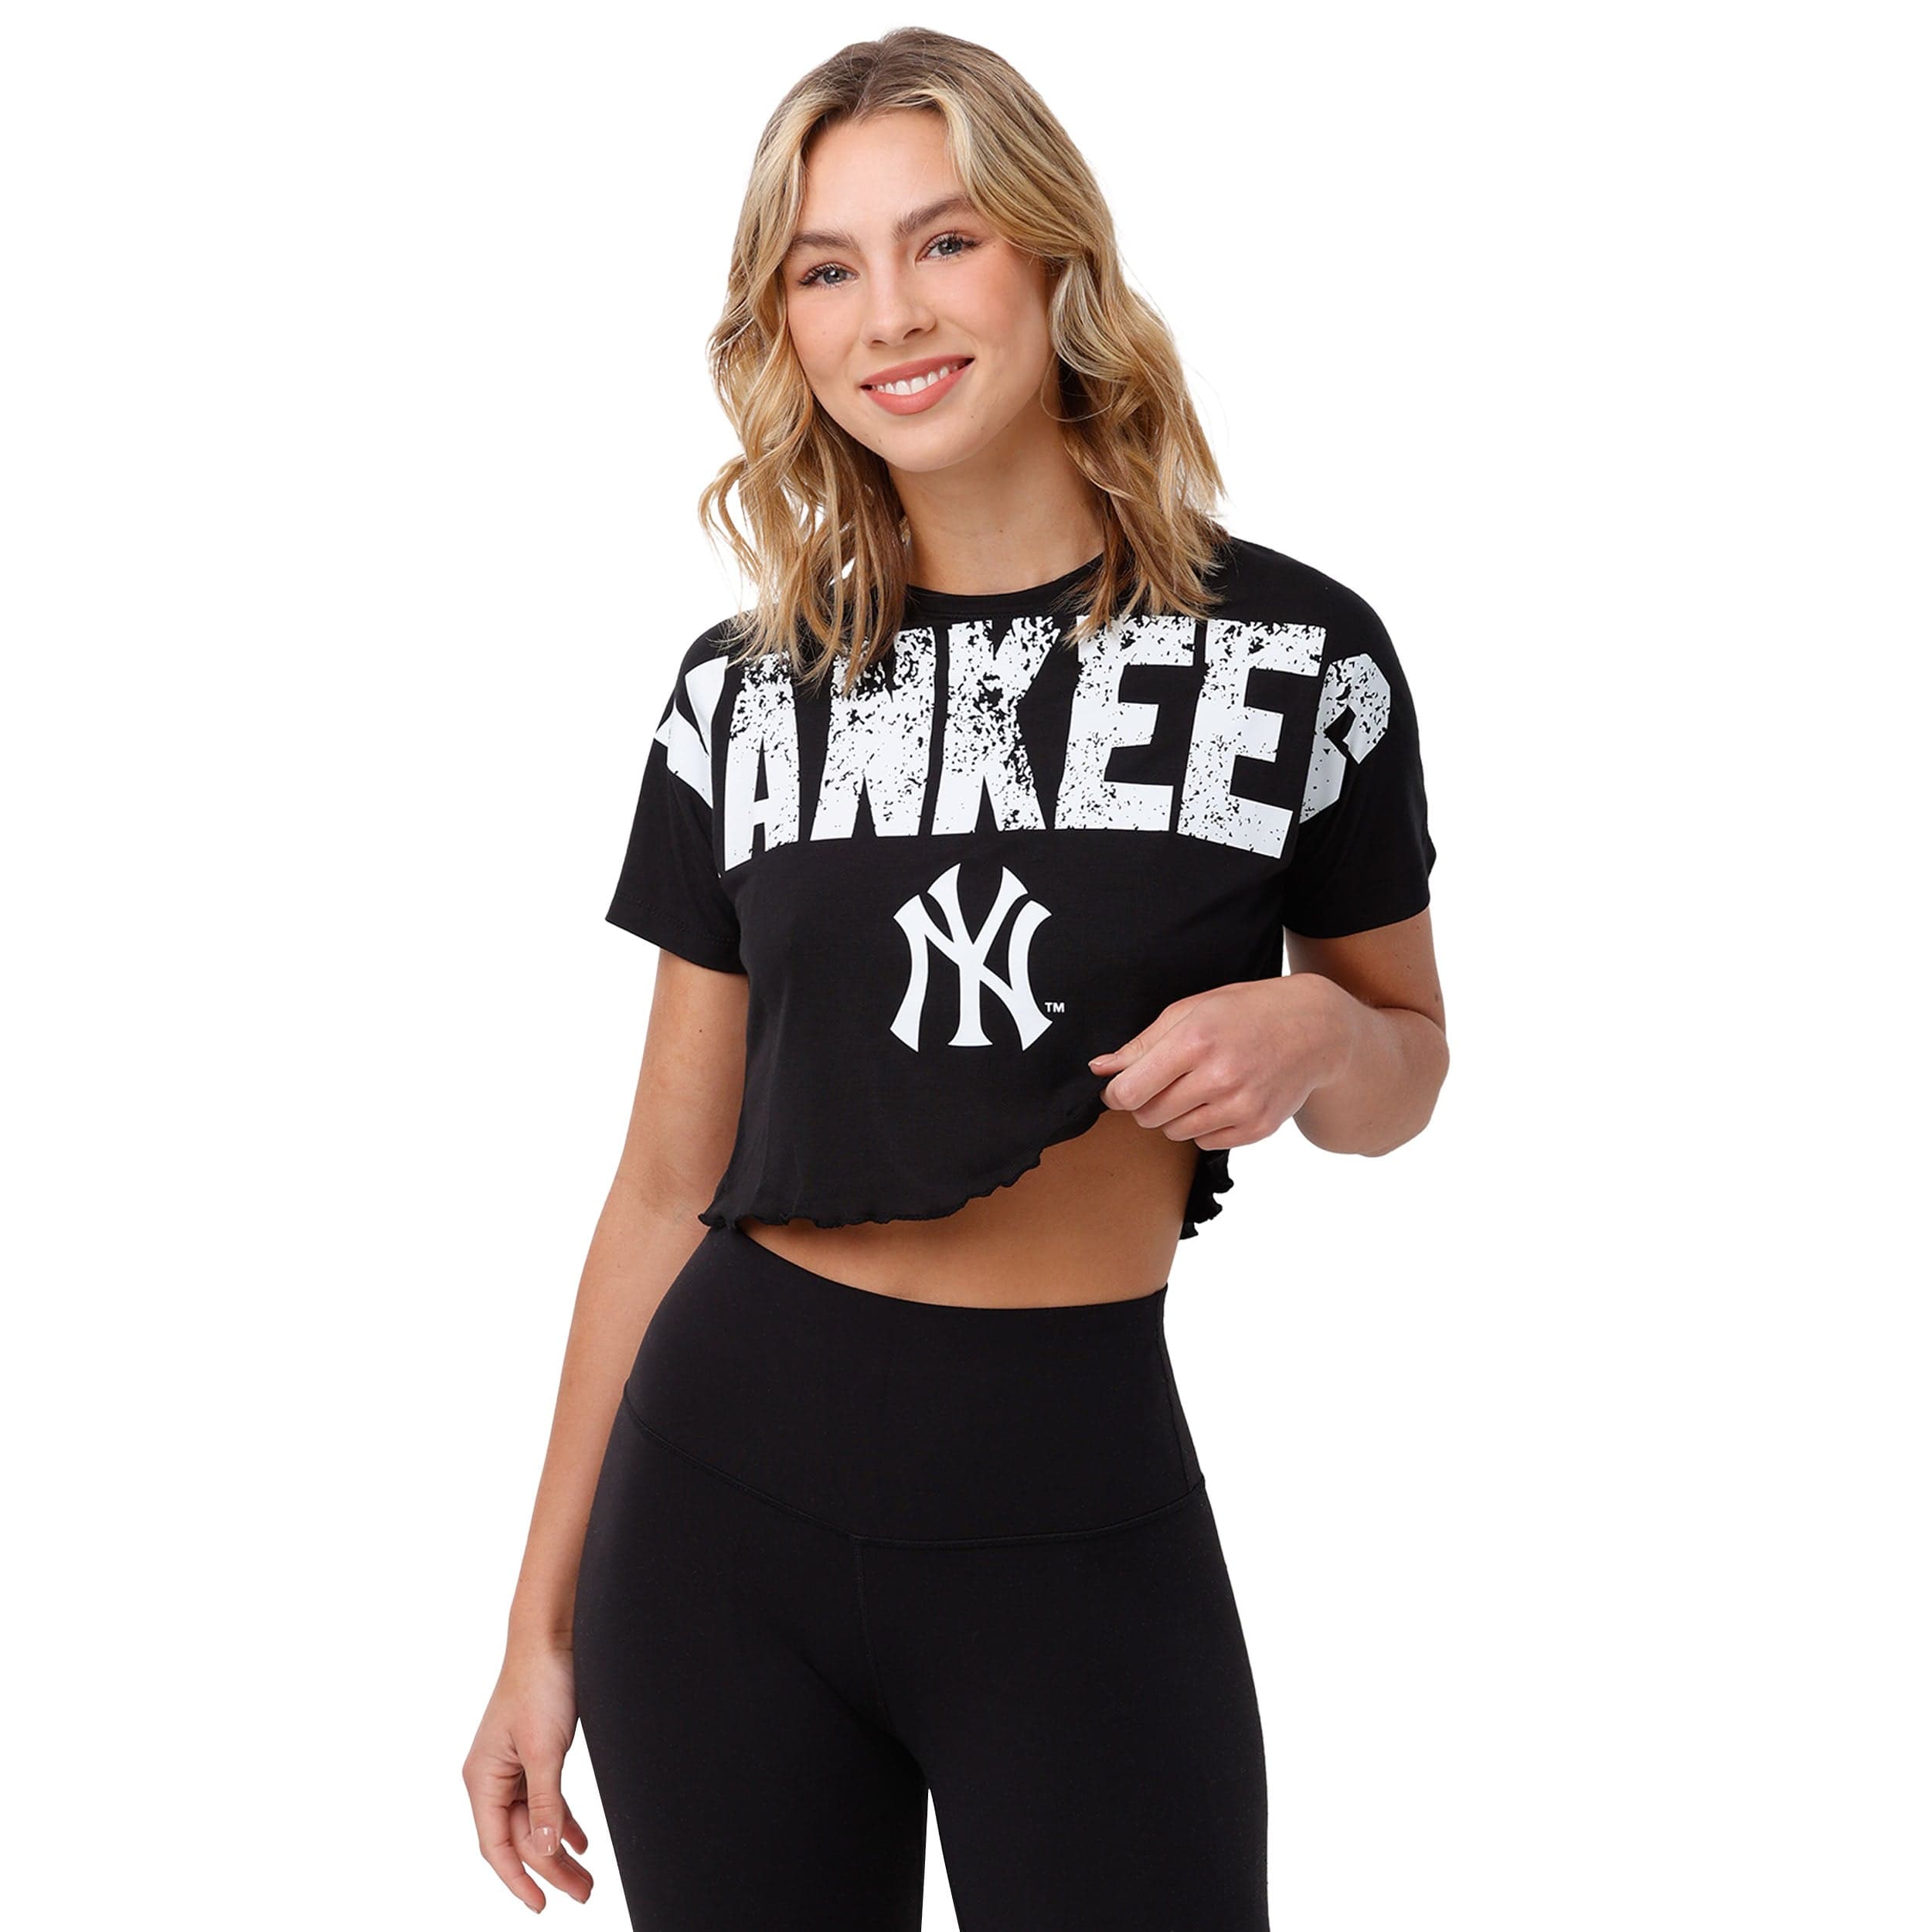 New York Yankees t shirt Womens size s